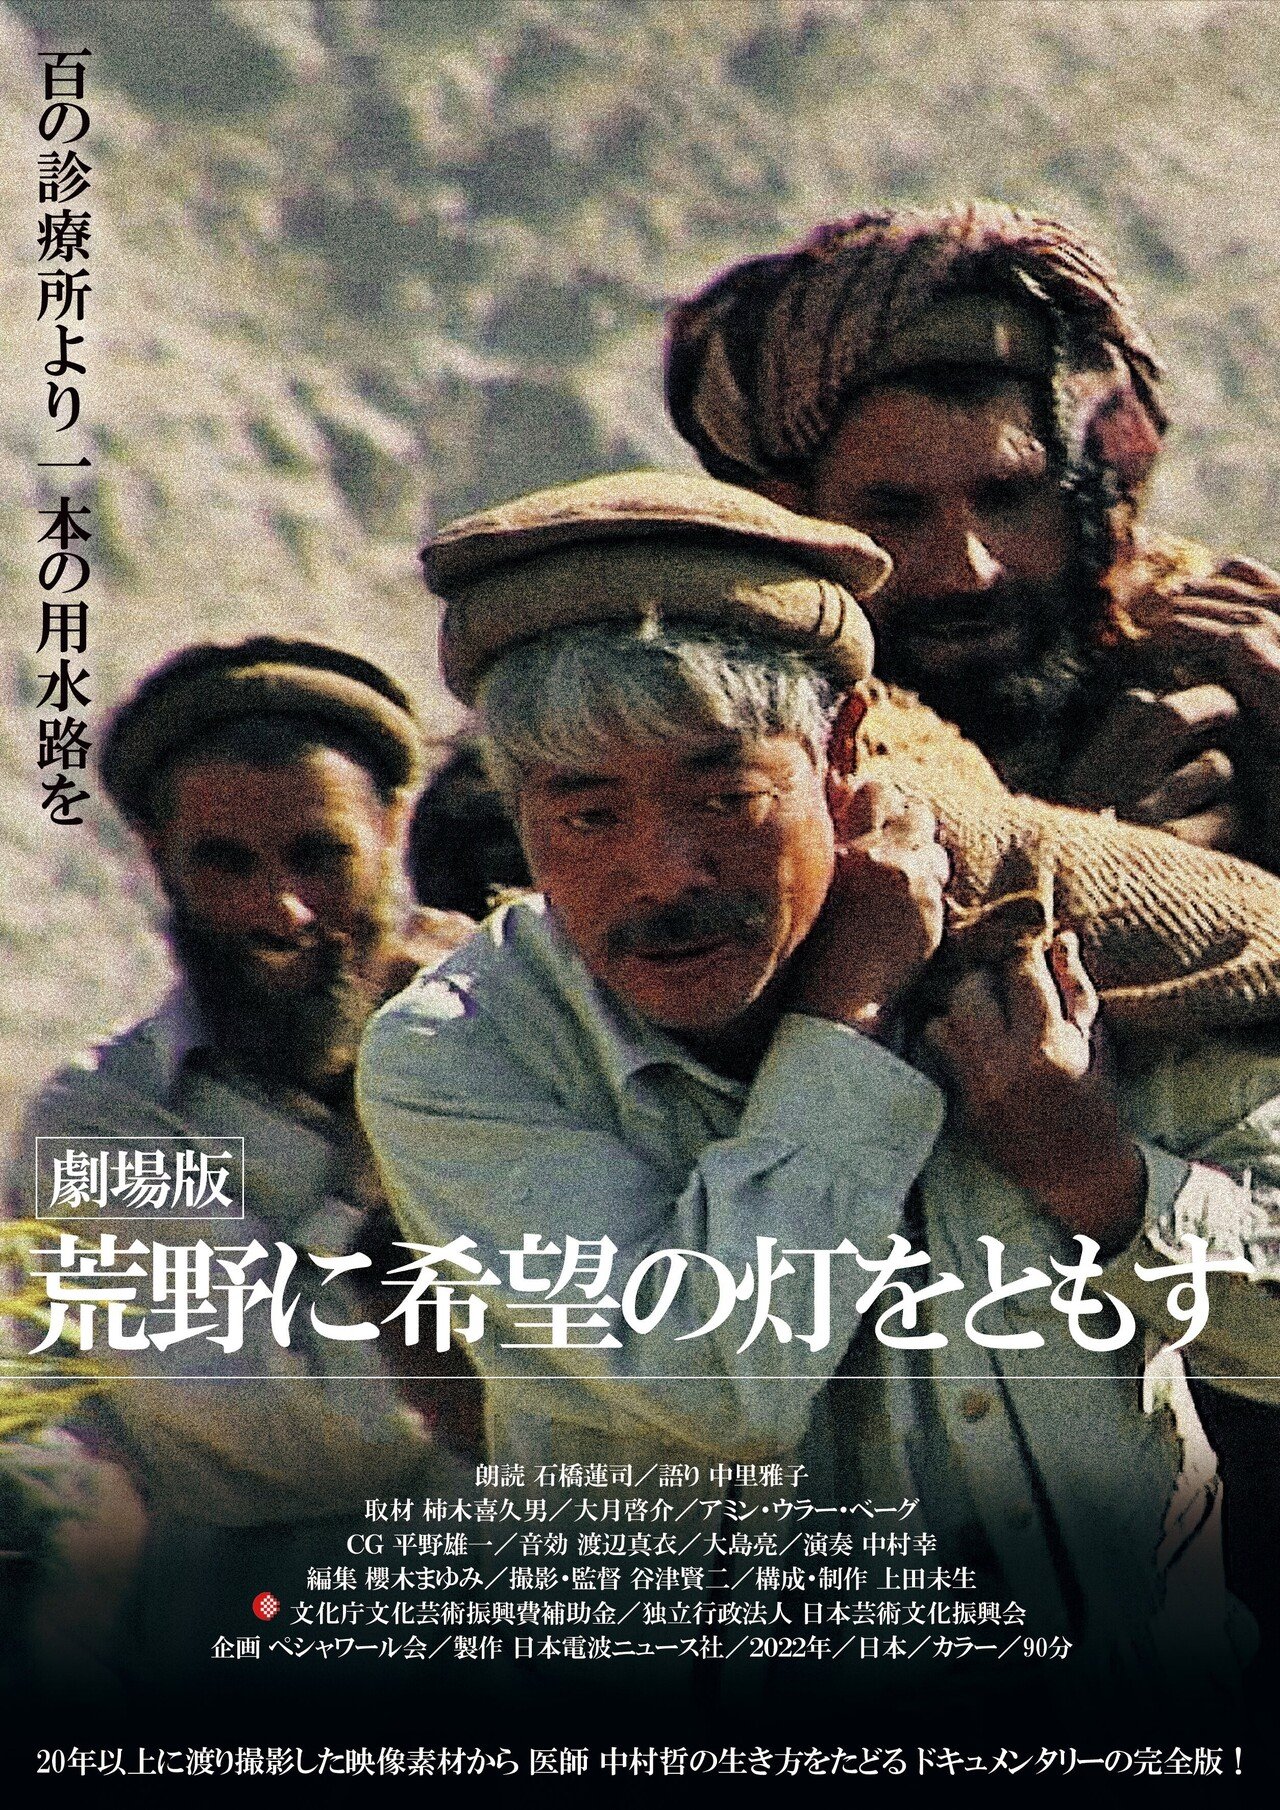 希少 中村哲「アフガンに命の水を ペシャワール会26年の闘い」DVD